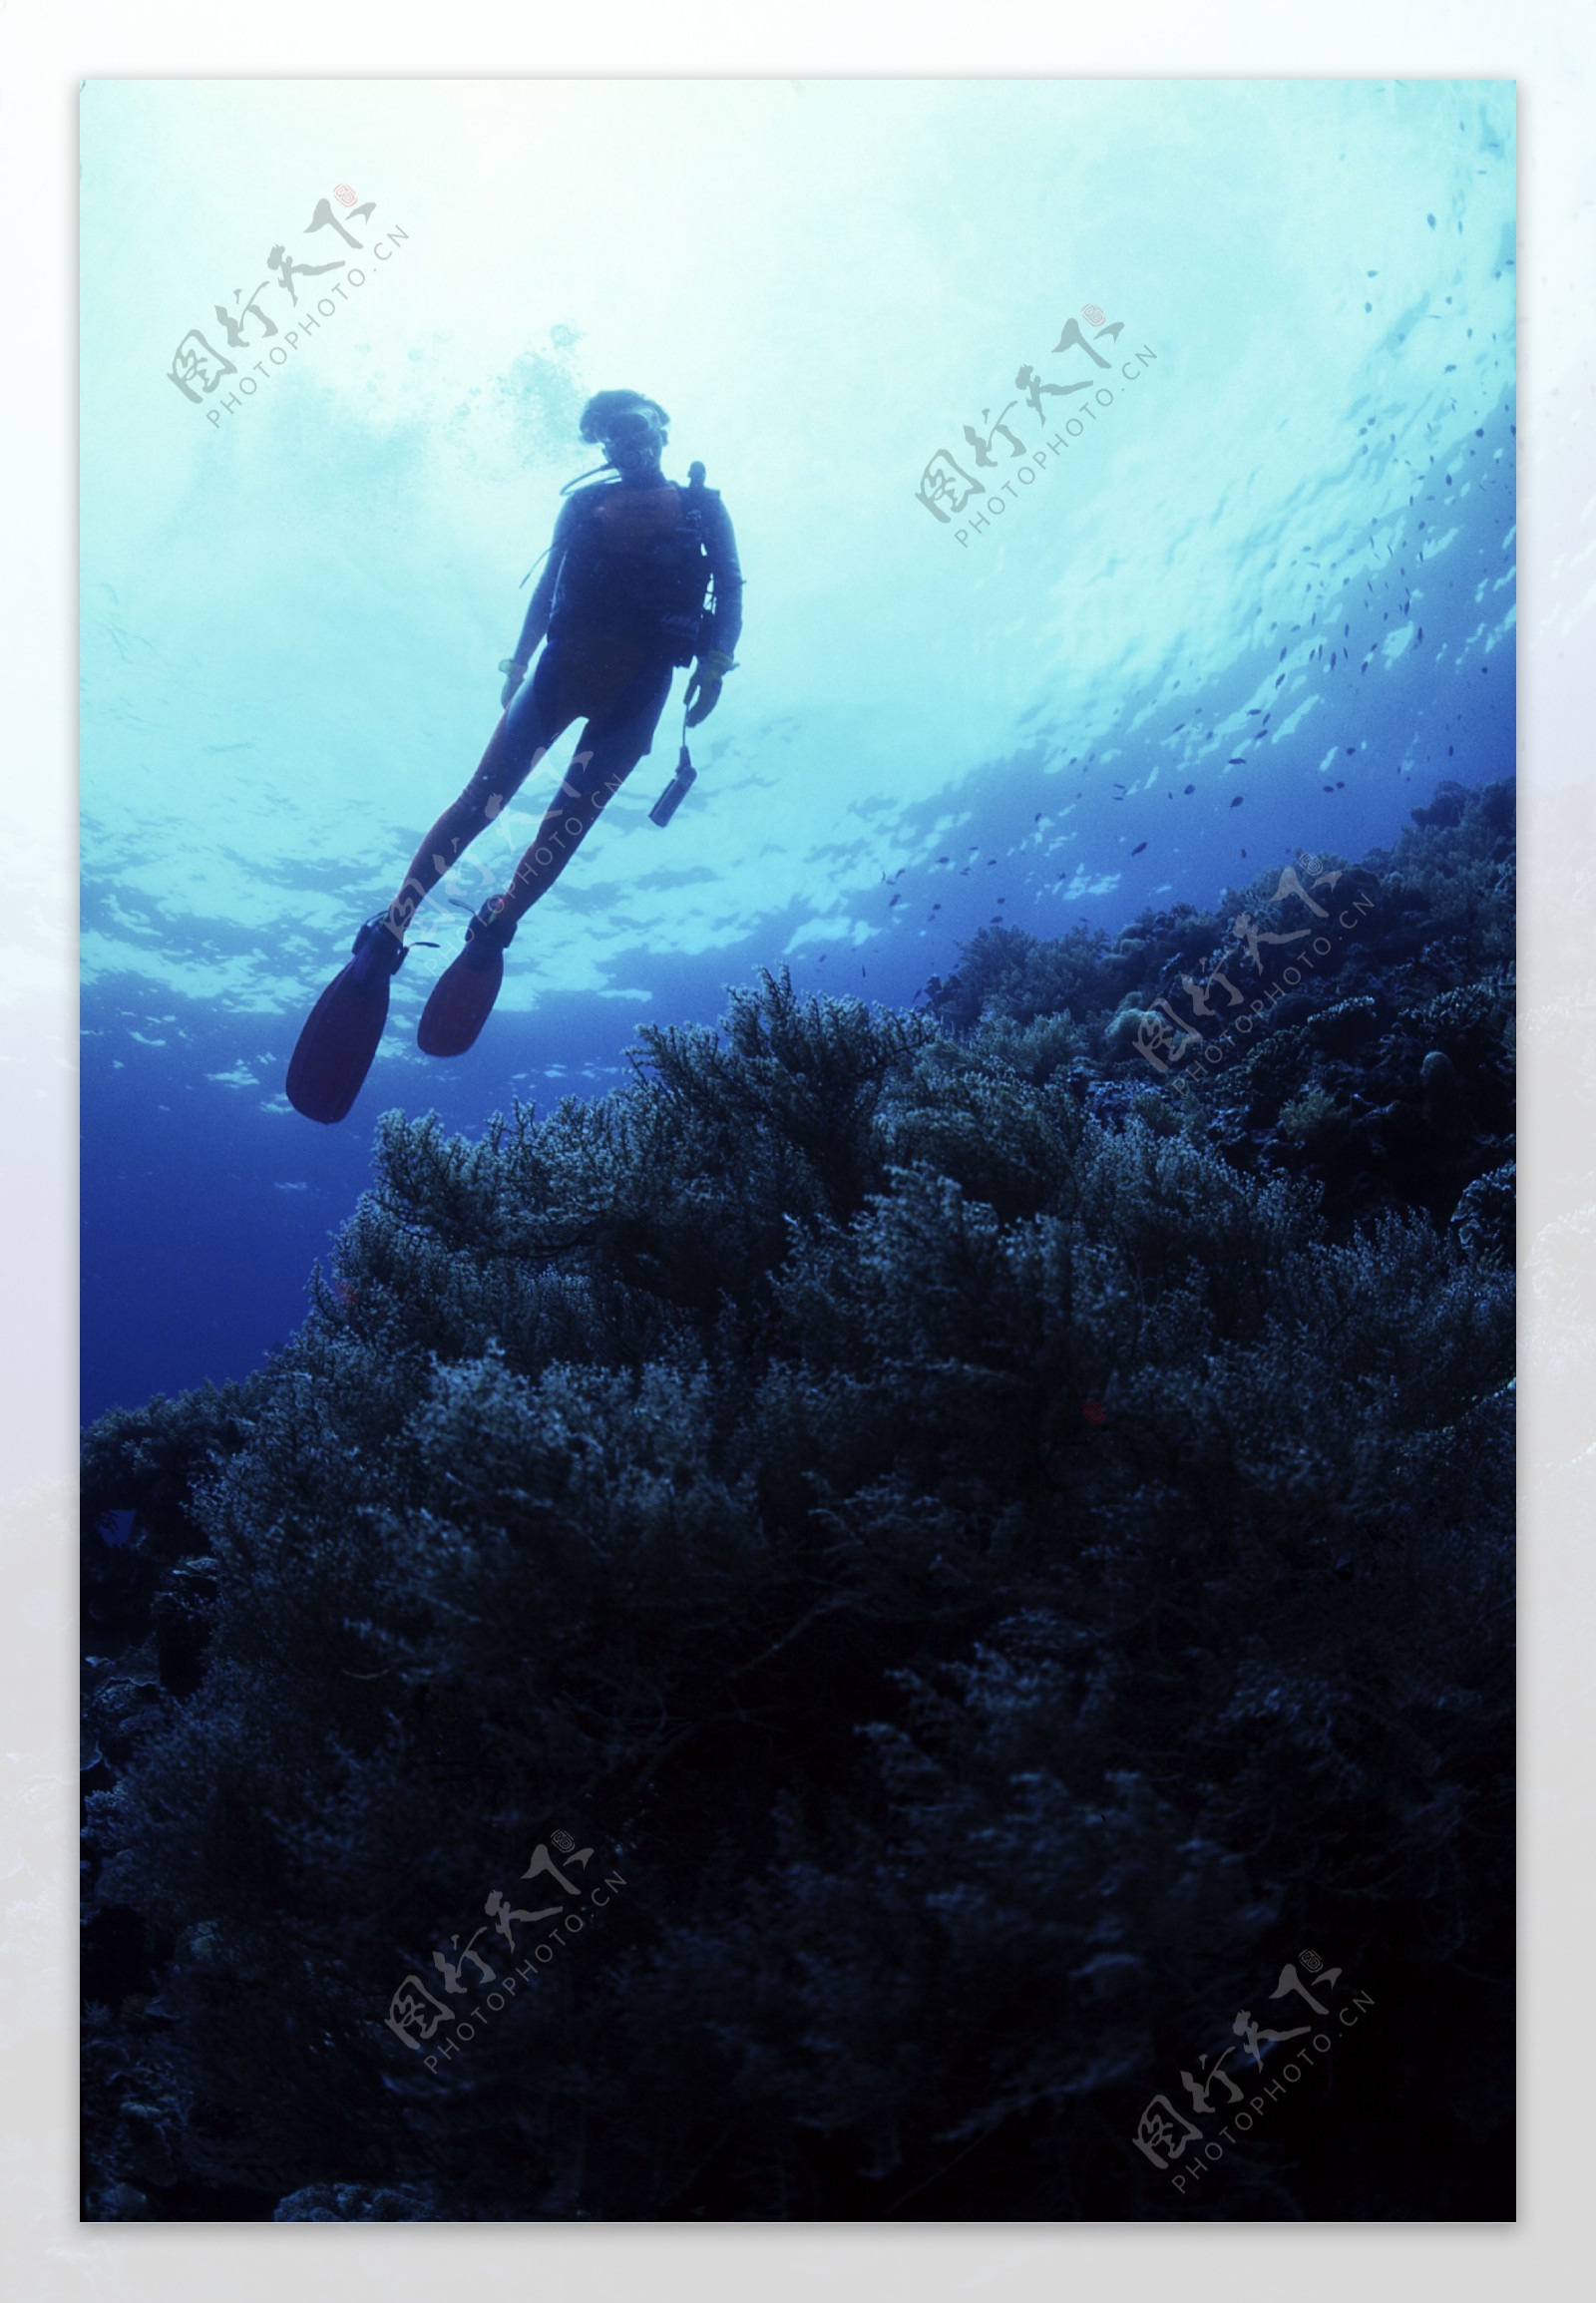 海底生物与潜水人员图片